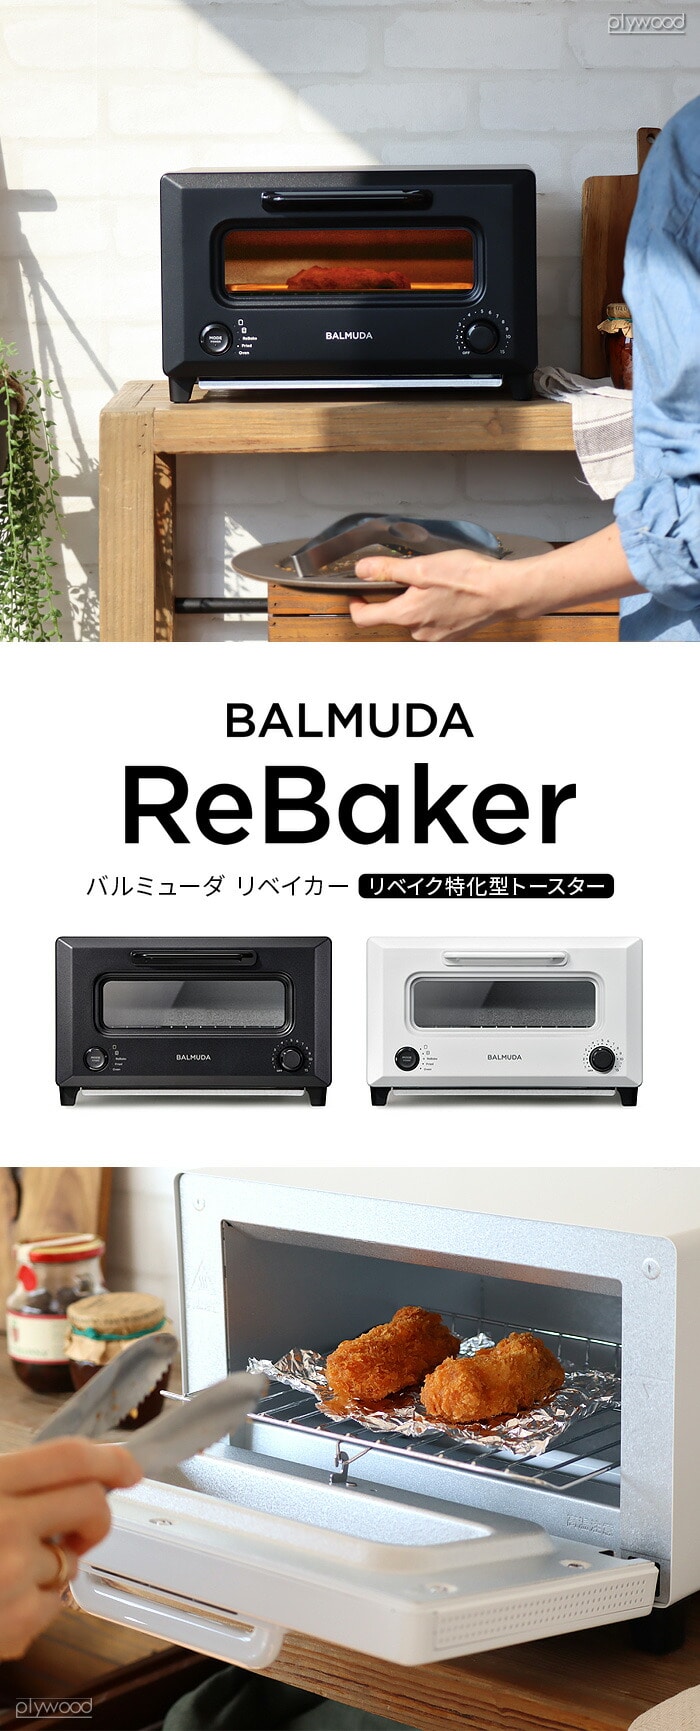 正規店 30日間全額返金保証 バルミューダ リベーカー BALMUDA ReBaker 